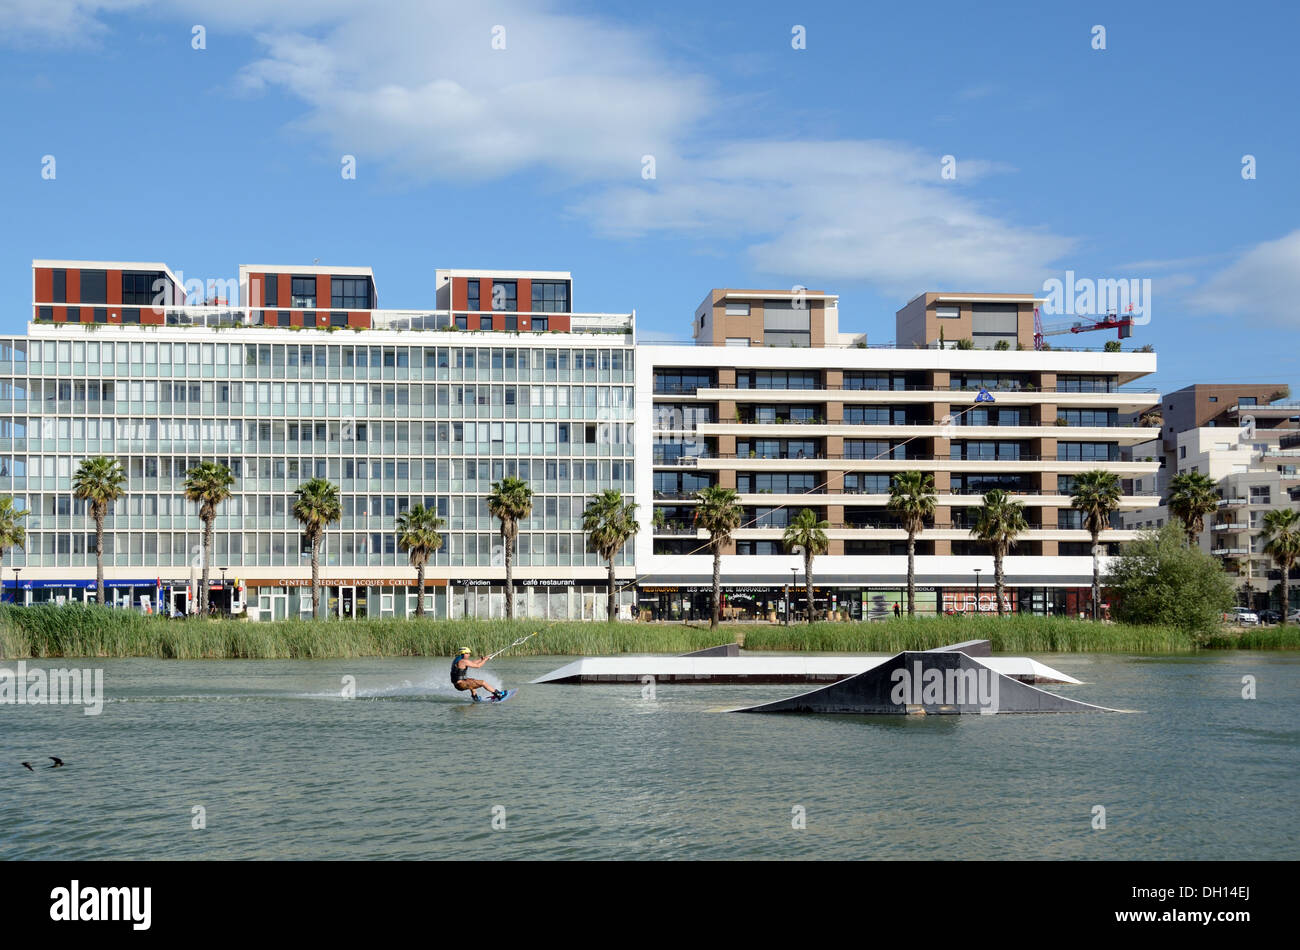 Wasserski auf dem Bassin Jacques Coeur & Modern Apartments im Parc Marianne-Viertel, einem neuen Viertel oder Vorort von Montpellier France Stockfoto